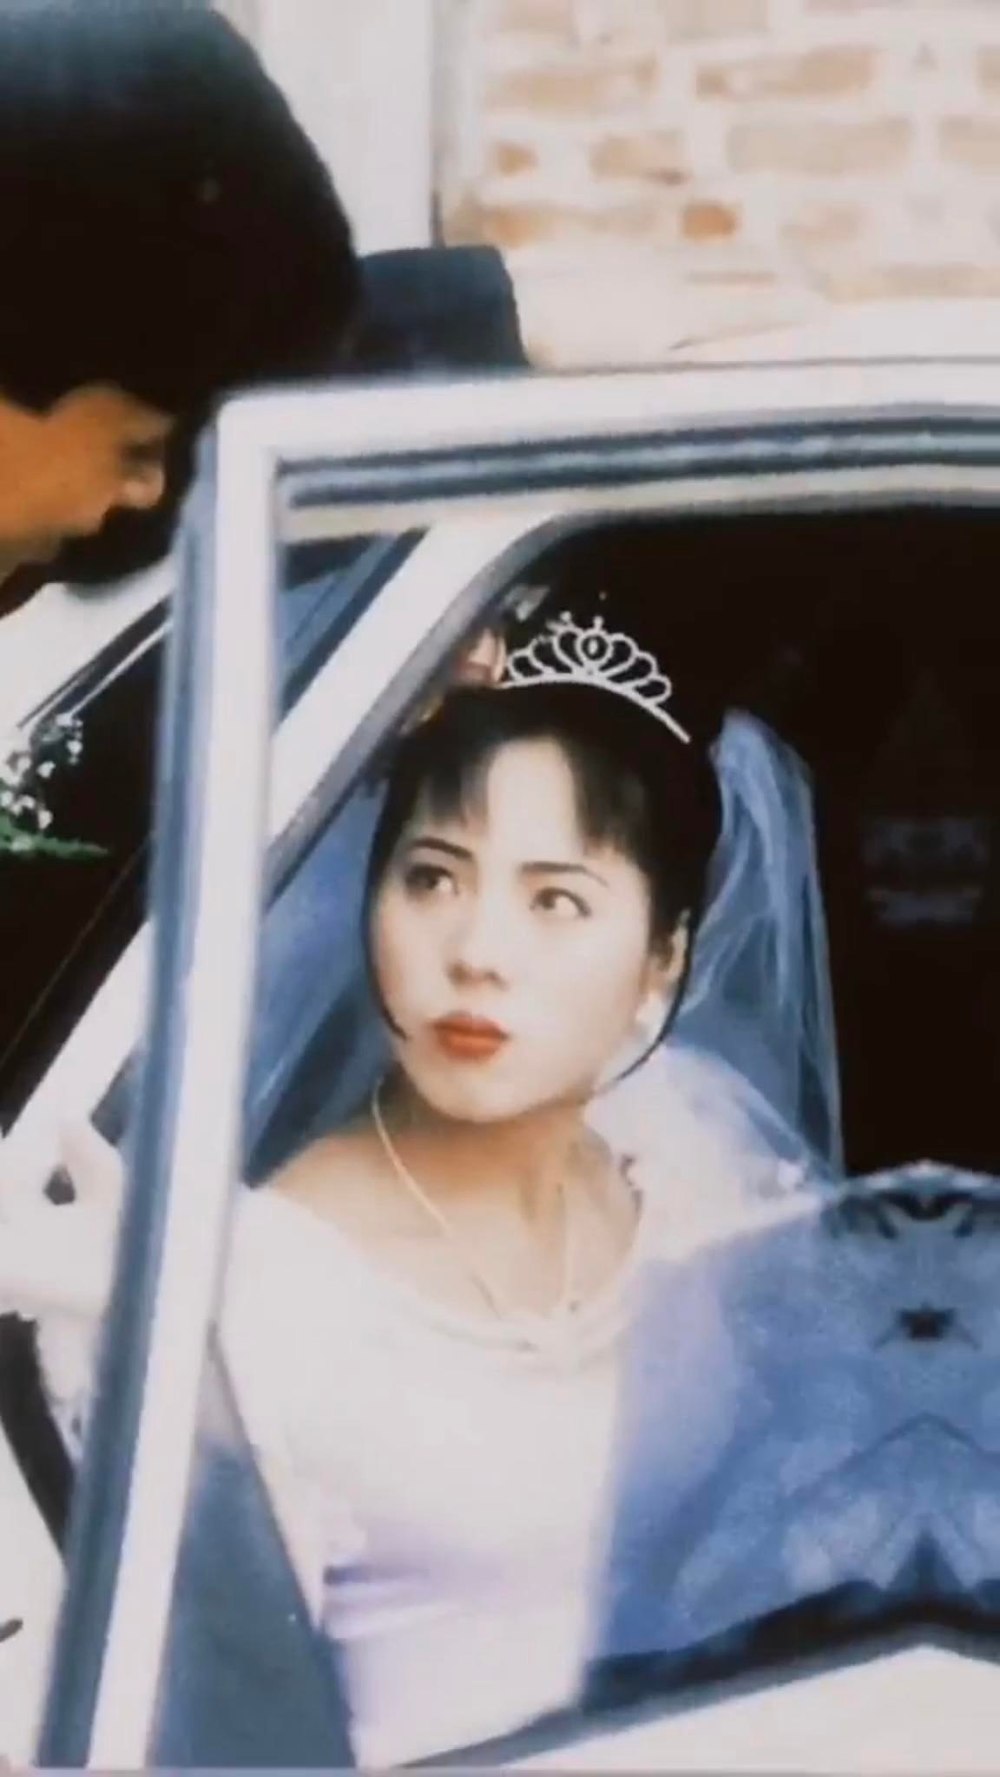 Bộ ảnh cưới 20 năm trước nóng trên MXH vì nhan sắc cô dâu chú rể không qua photoshop - Ảnh 2